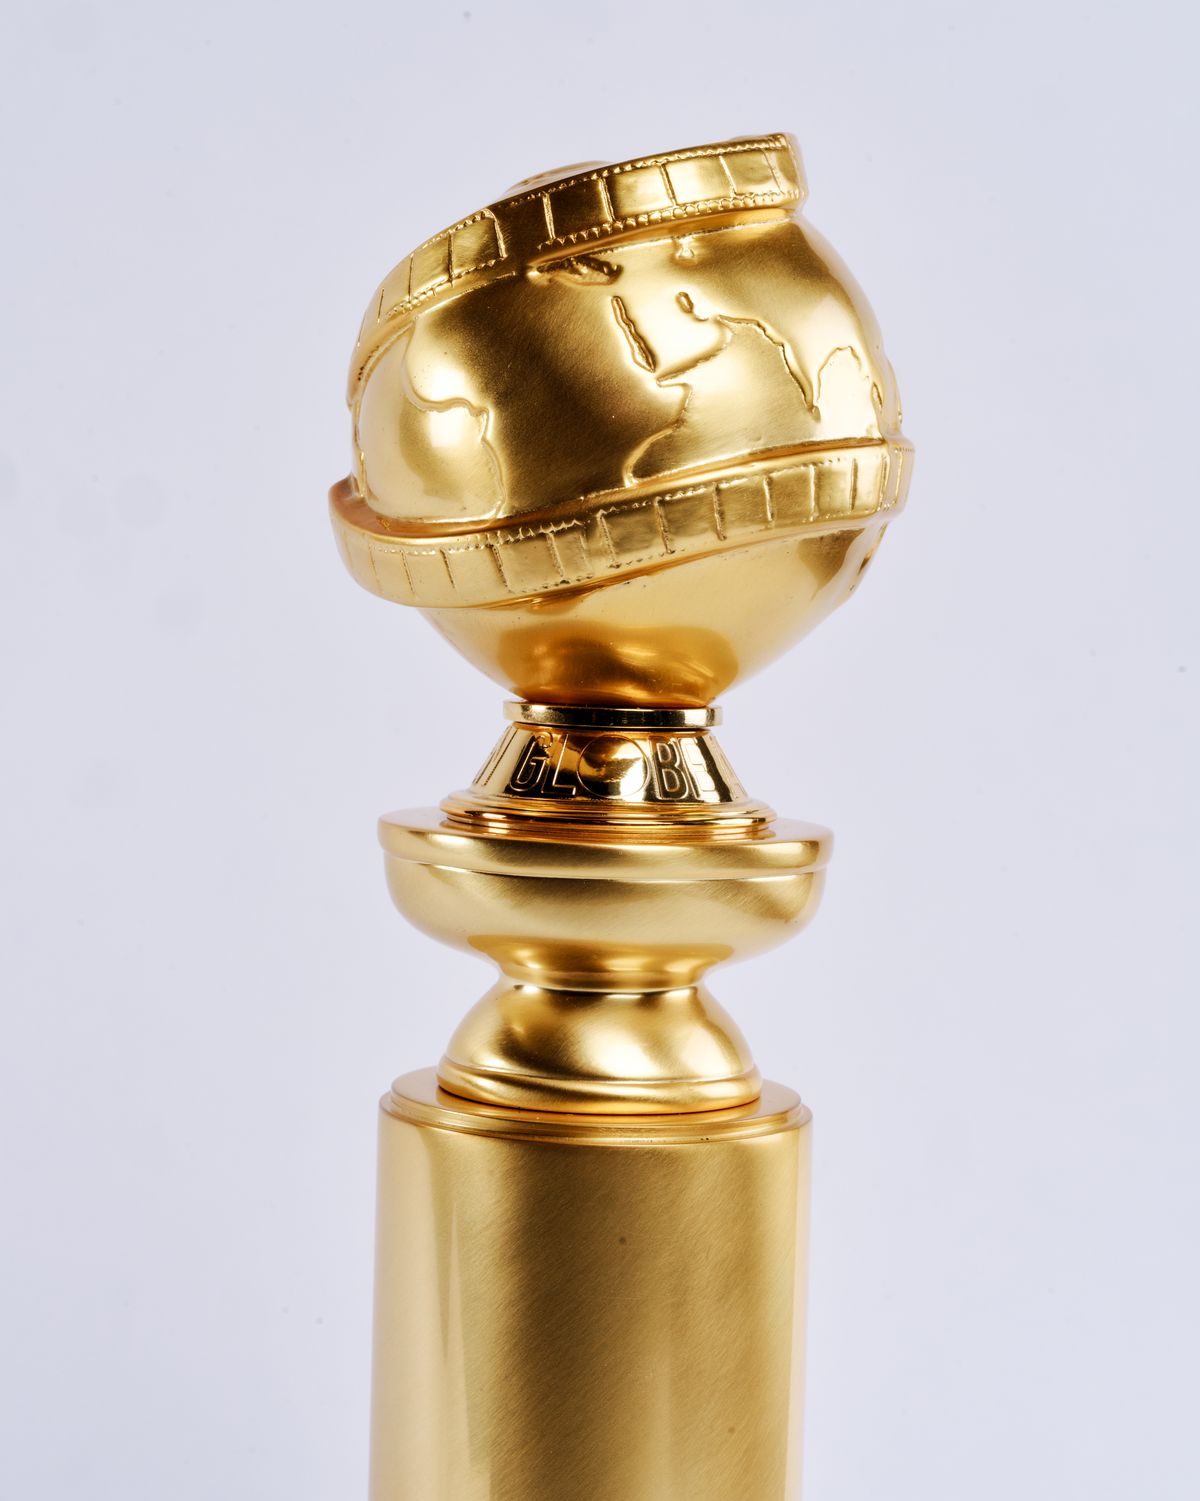 Anuncios de nominaciones a la 81a edición de los Globos de Oro